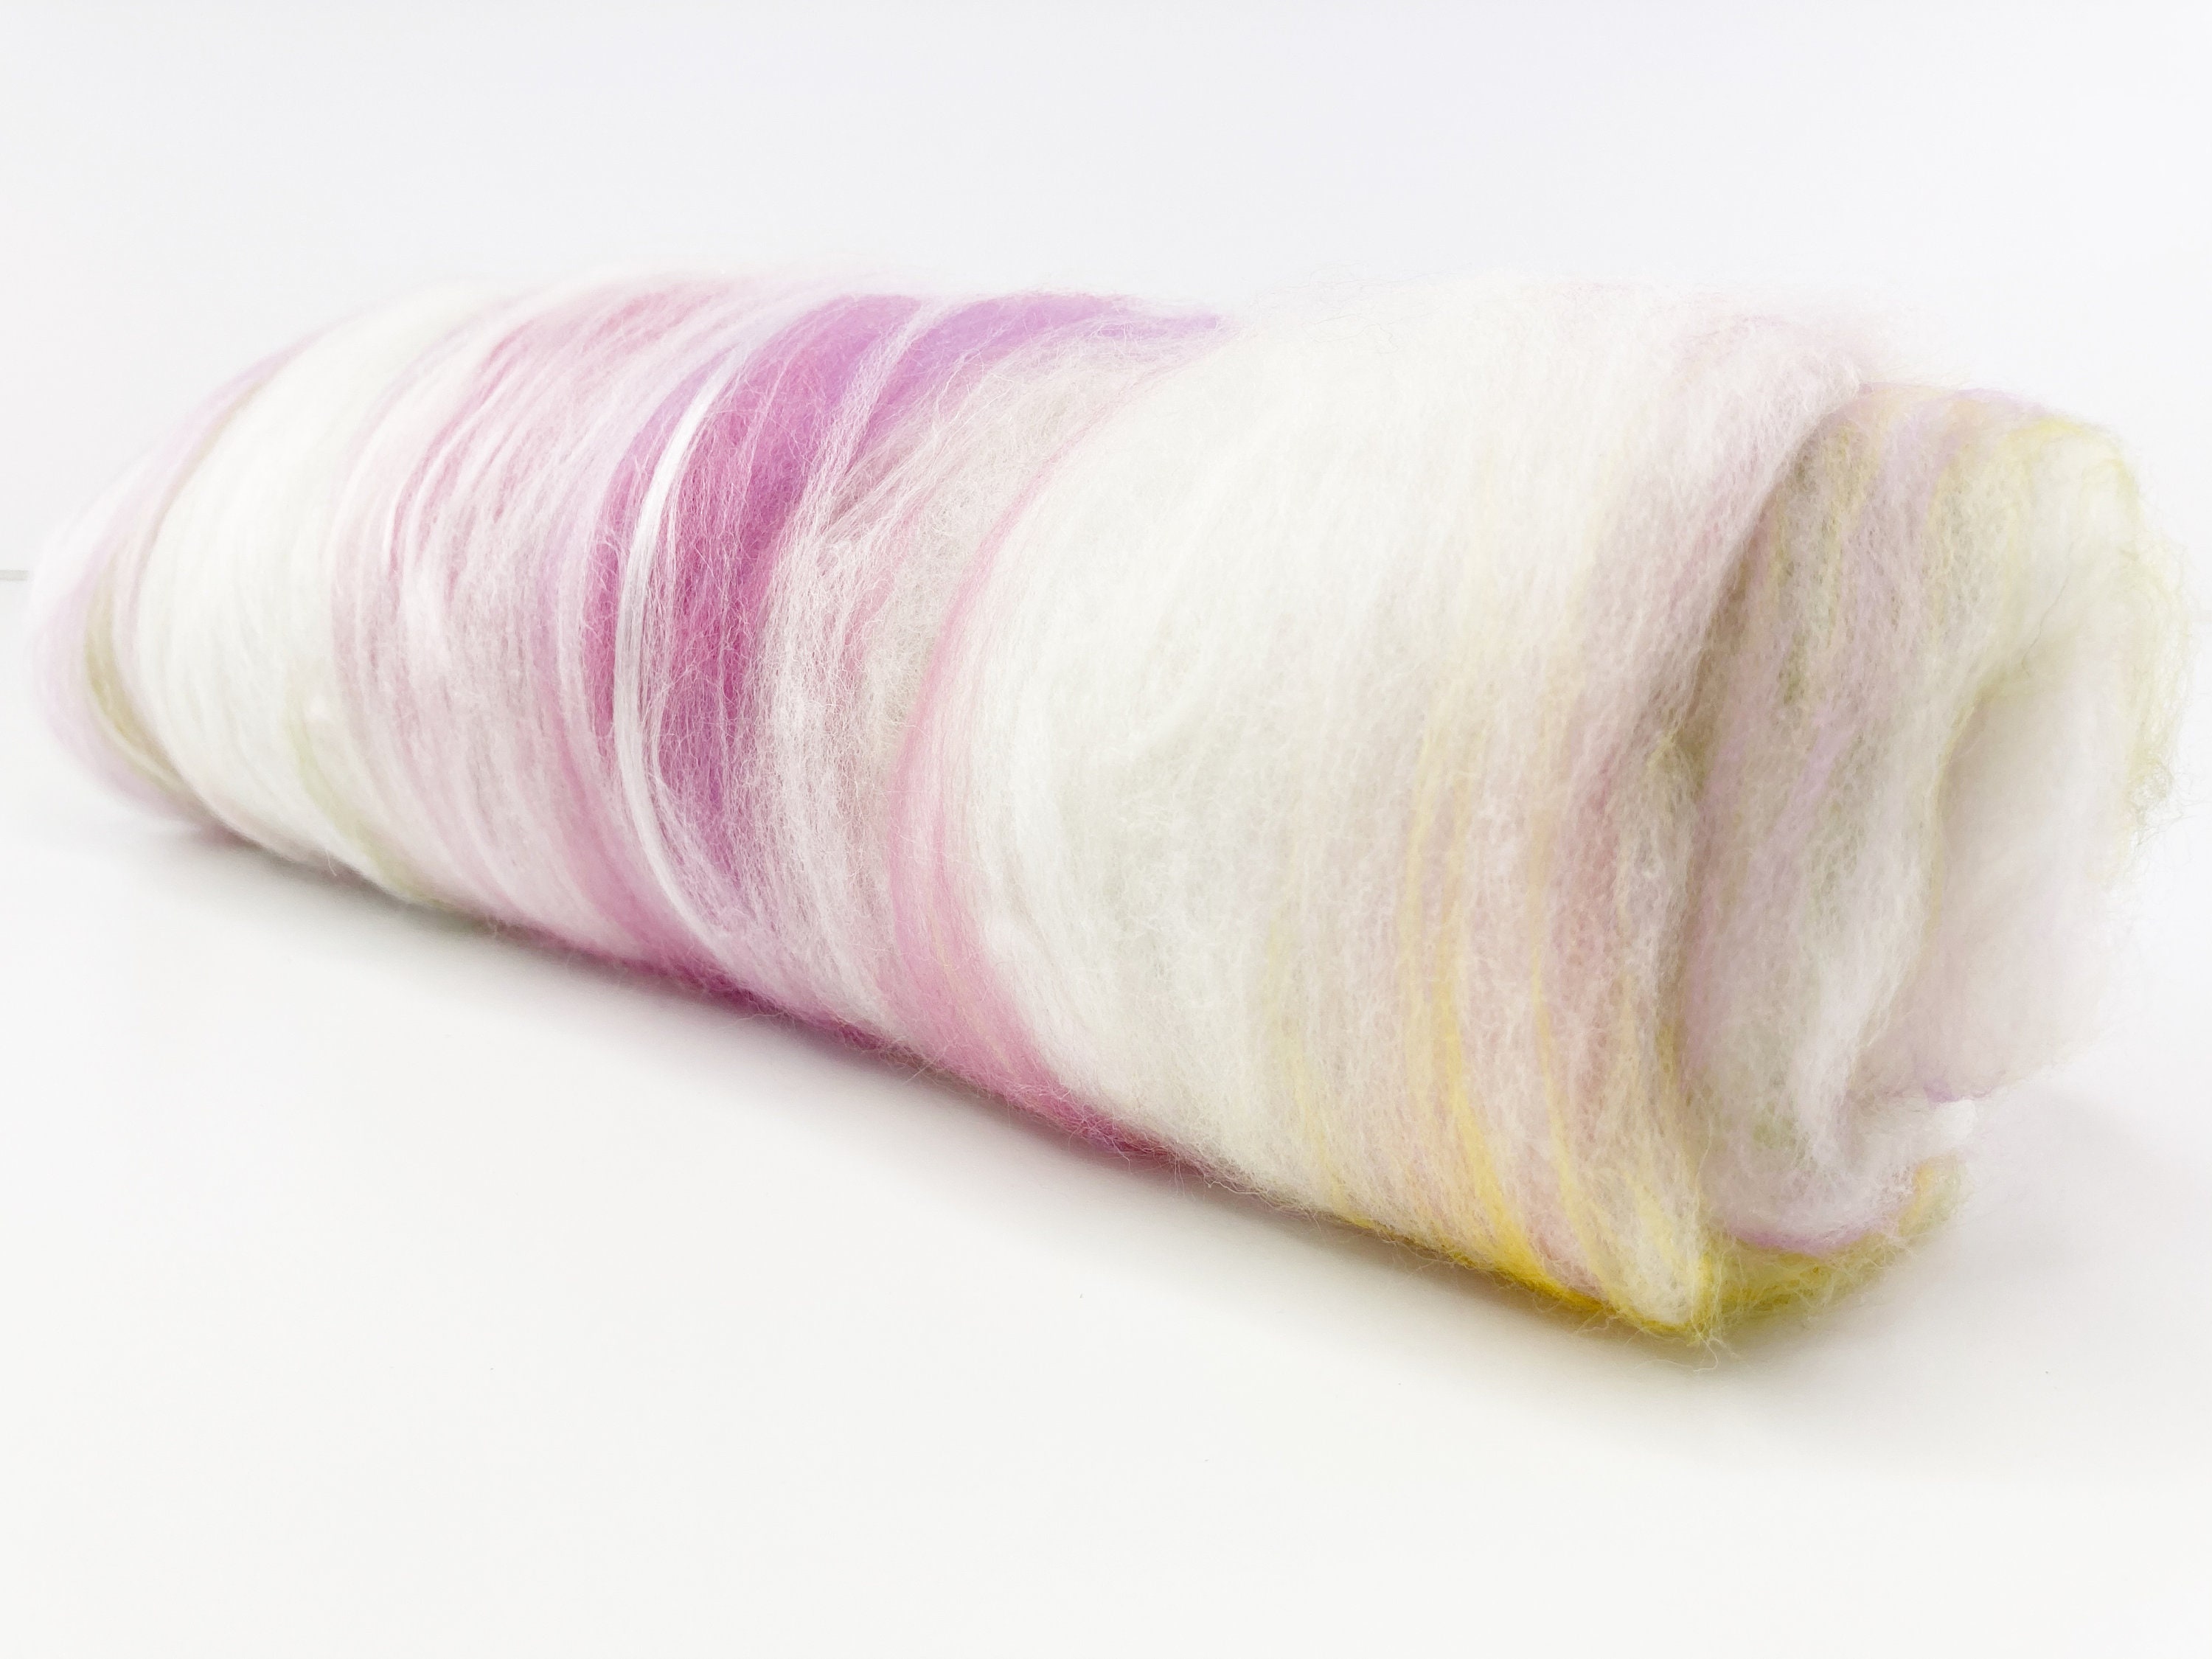 Spinning Fiber . Art Batt Blended For Spinning Ooak Supply Carded Color Bloom"